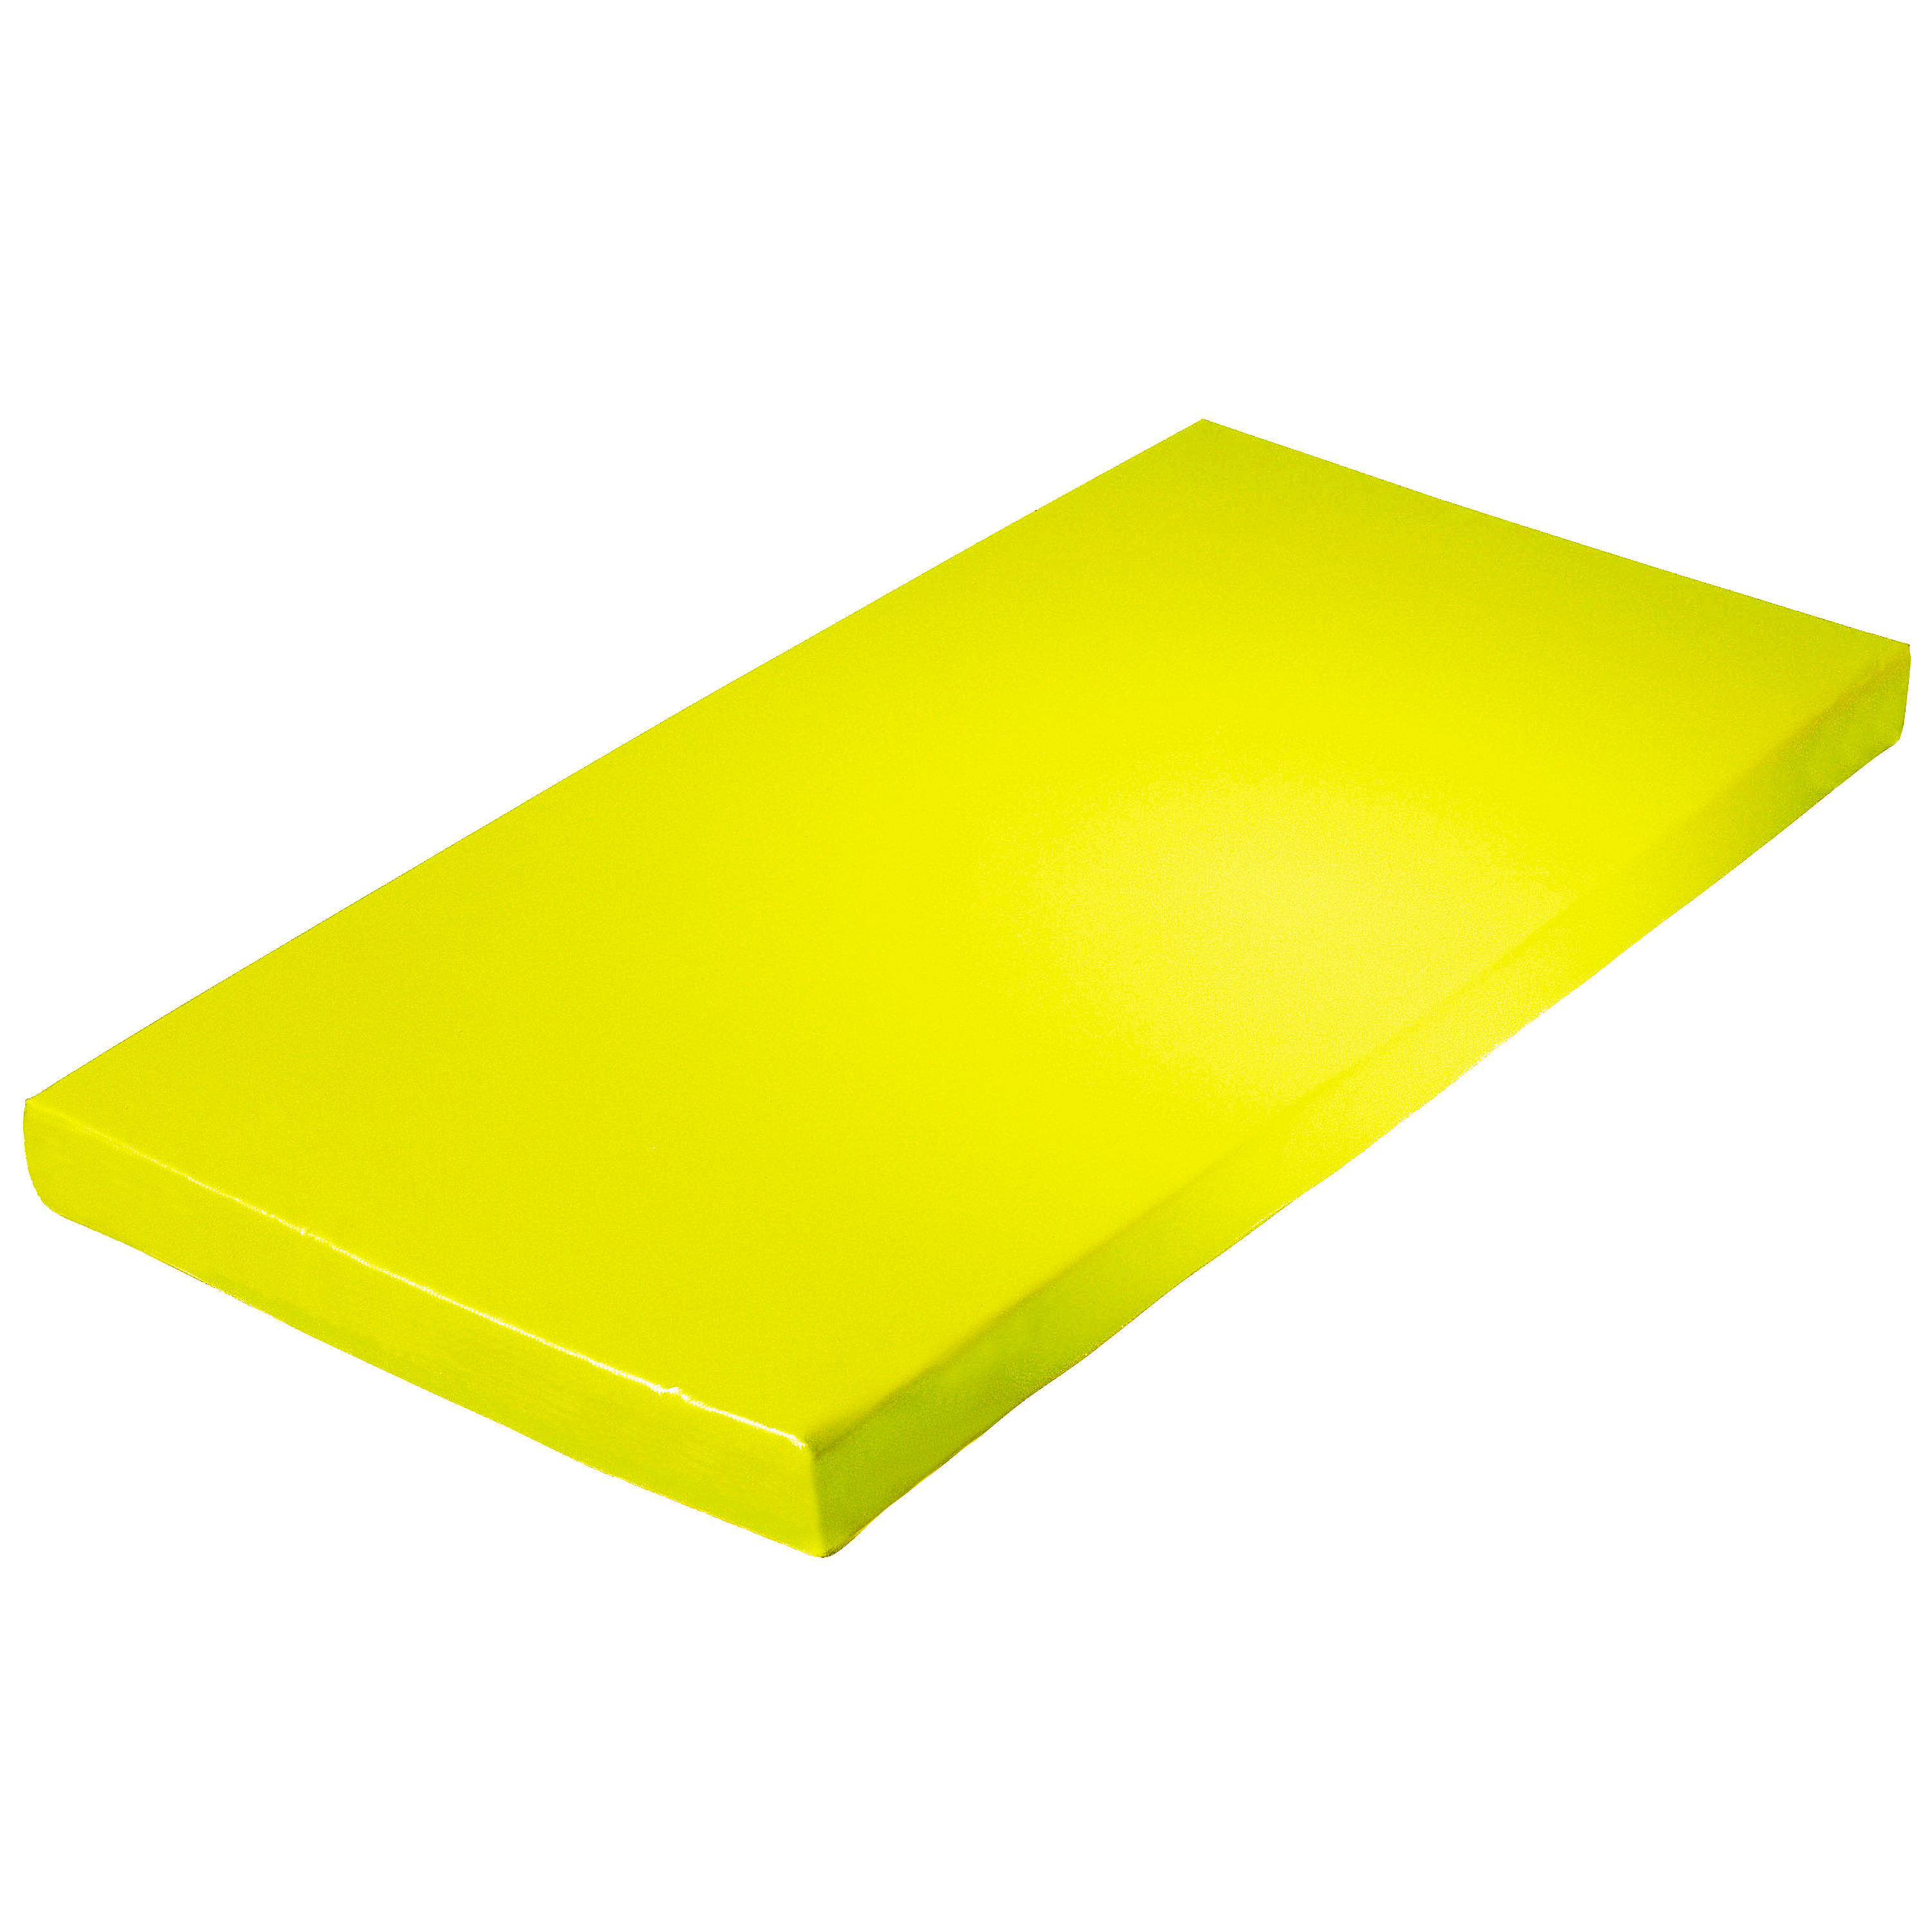 Super-Leichtturnmatte 200 x 125 x 8 cm, gelb